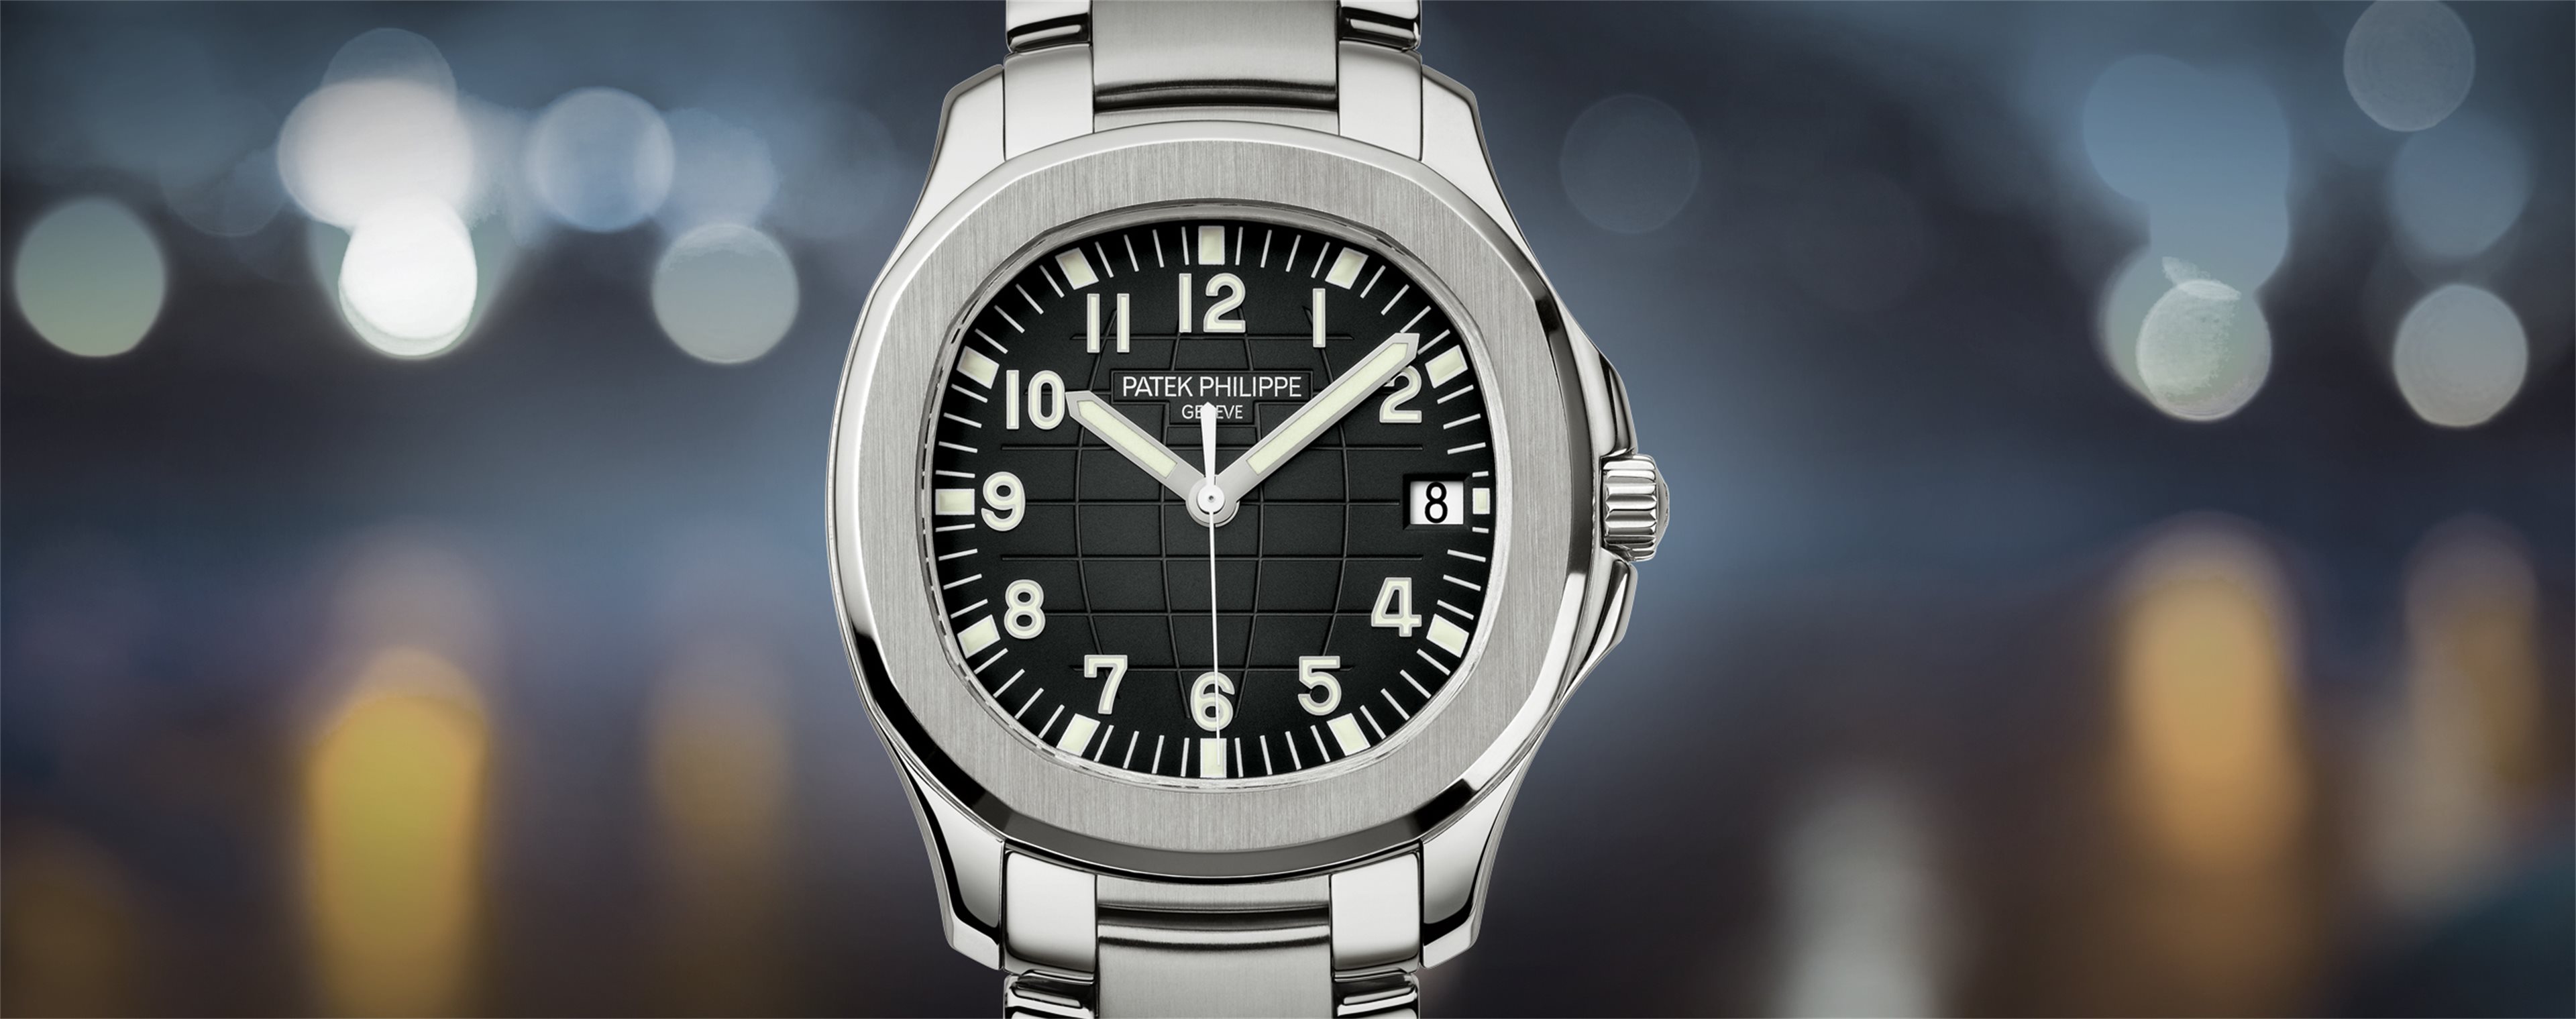 007 Omega Watch Replica